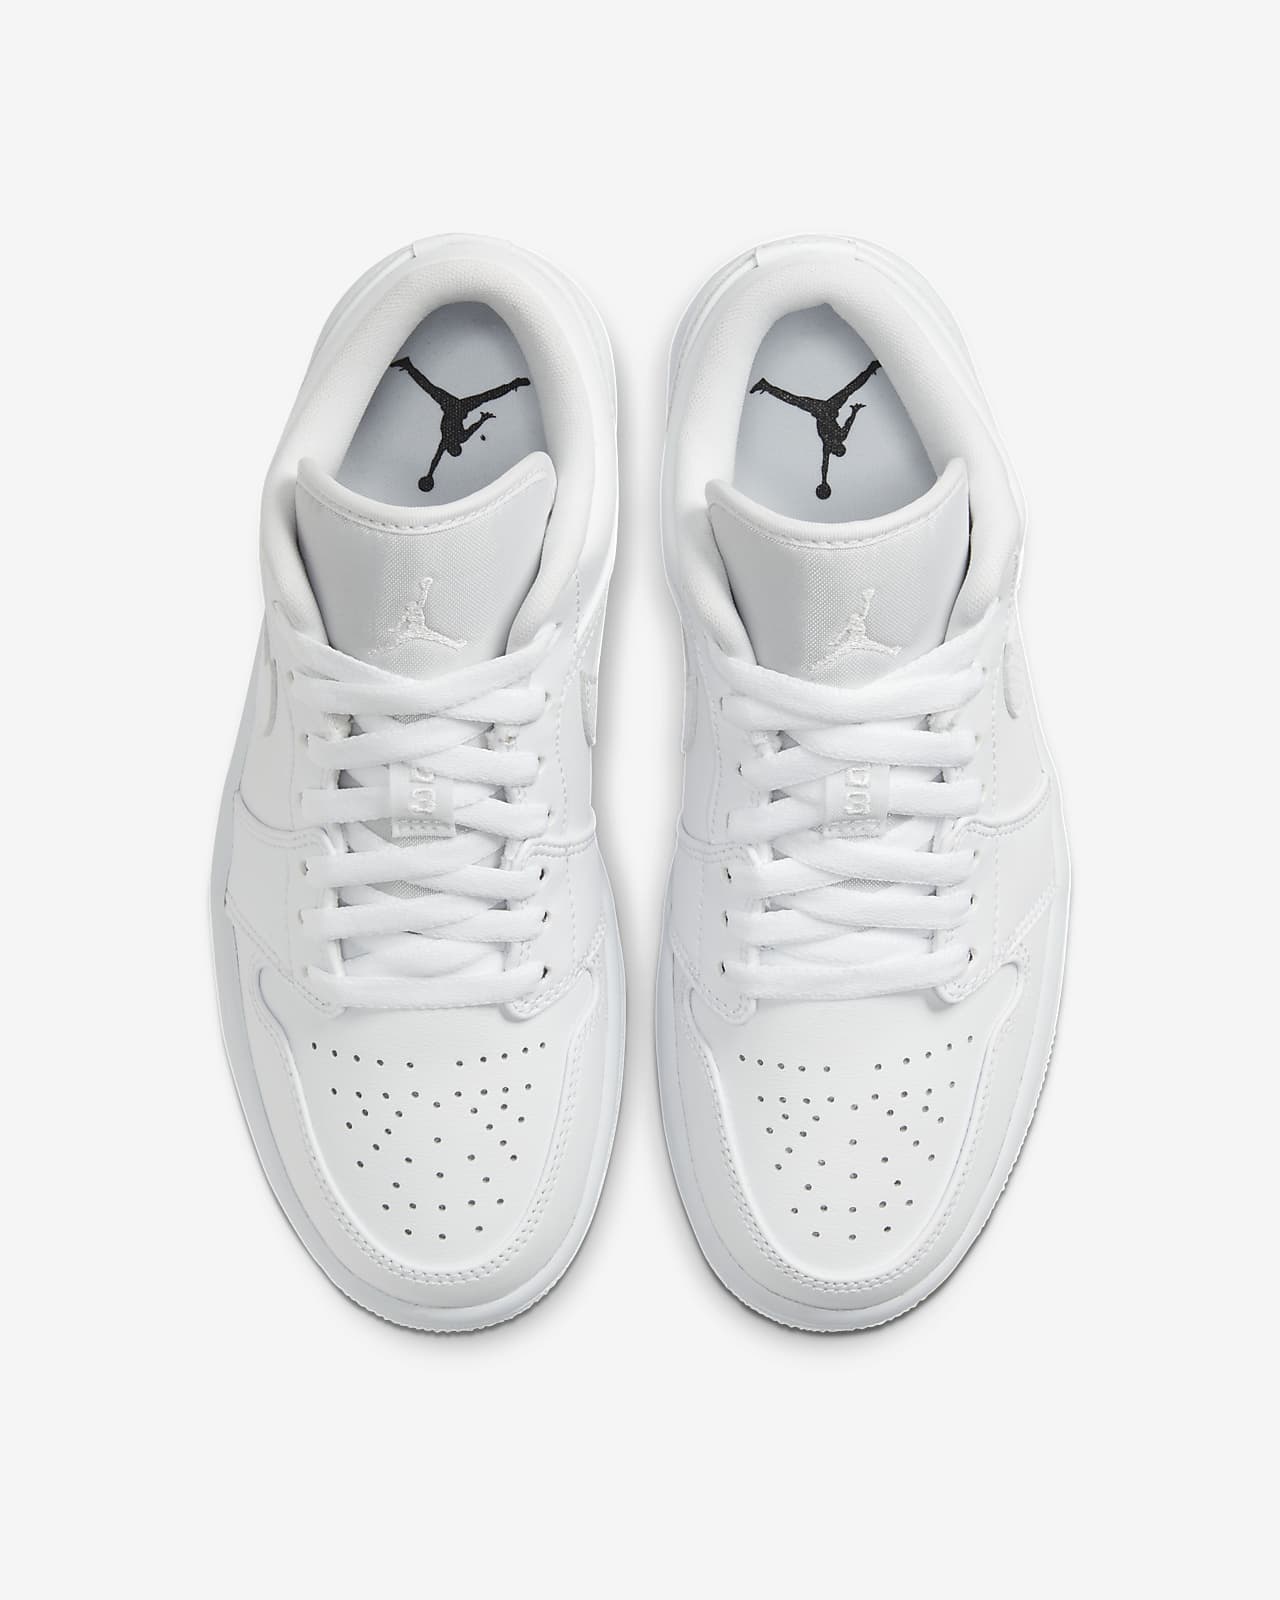 Air Jordan 1 Low Women's Shoes. Nike BG